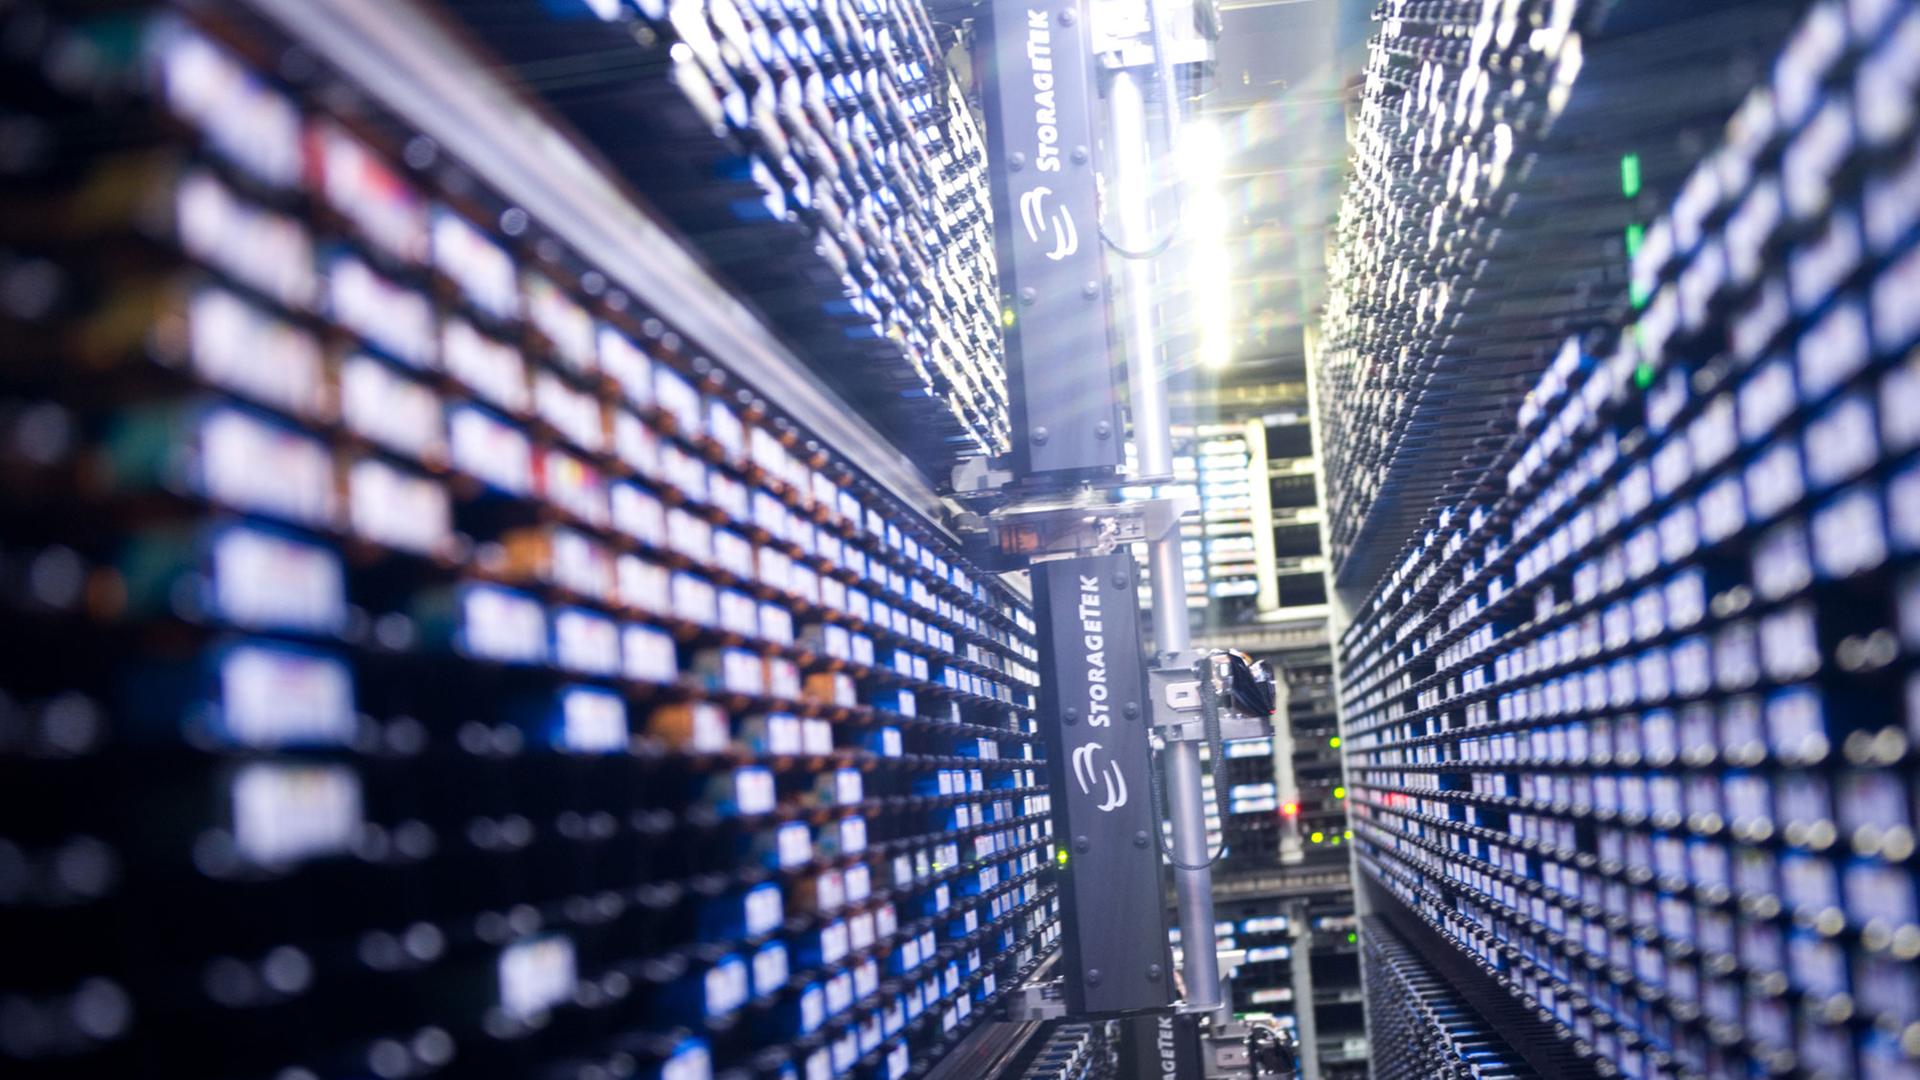 Lange Reihen von Lichtern laufen in der Mitte des Bildes zusammen. Es zeigt ein automatisches Lager für Magnet-Datenbänder in einem Nebenraum des Supercomputers "Blizzard" im Deutschen Klimarechenzentrum in Hamburg